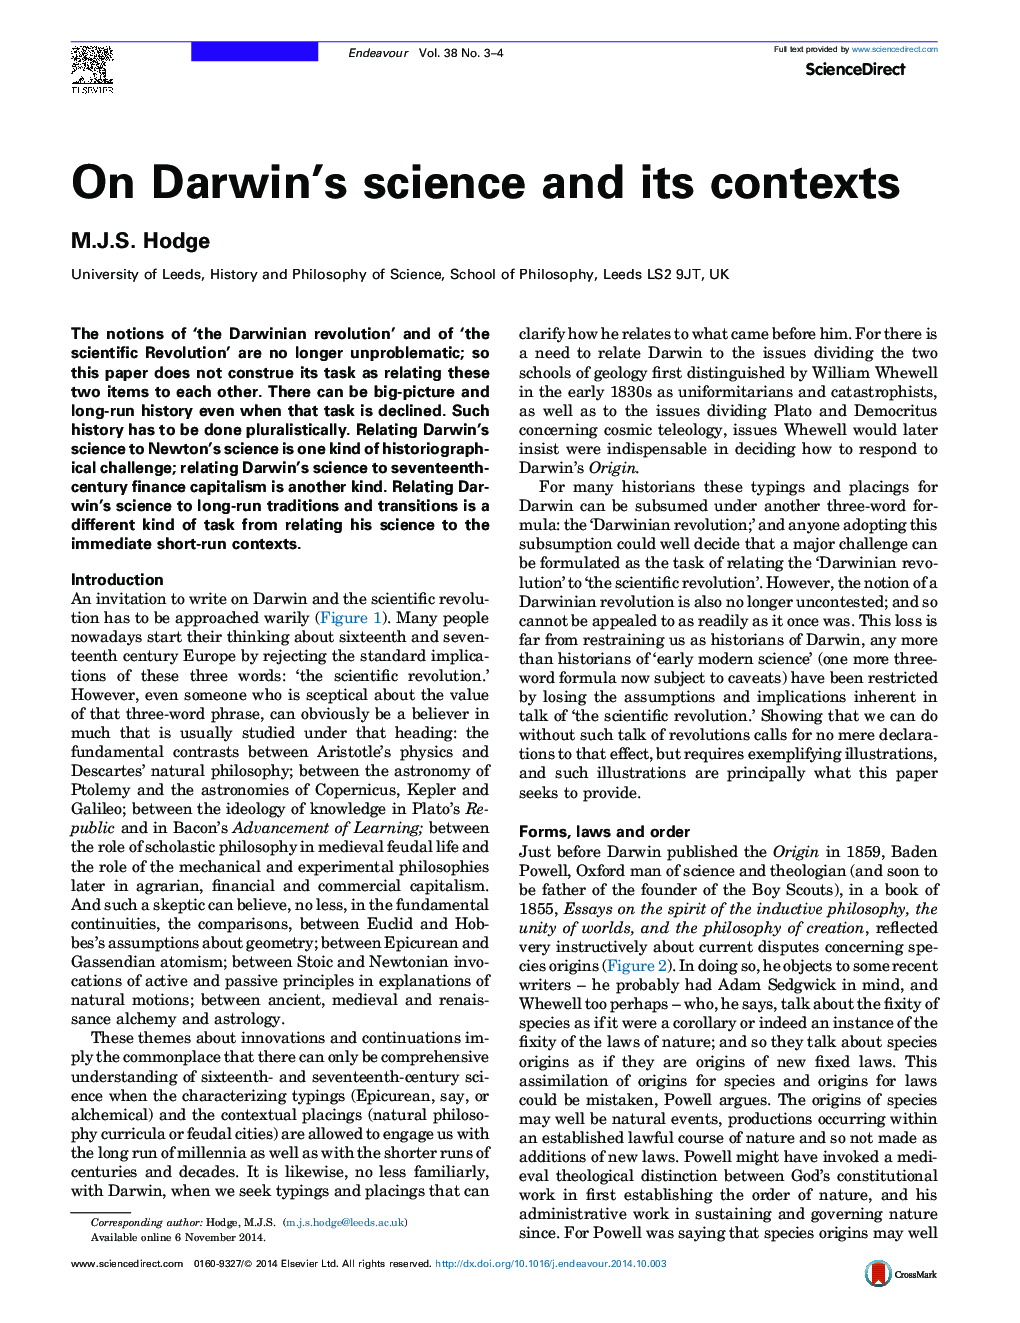 بر روی علم داروین و زمینه های آن 